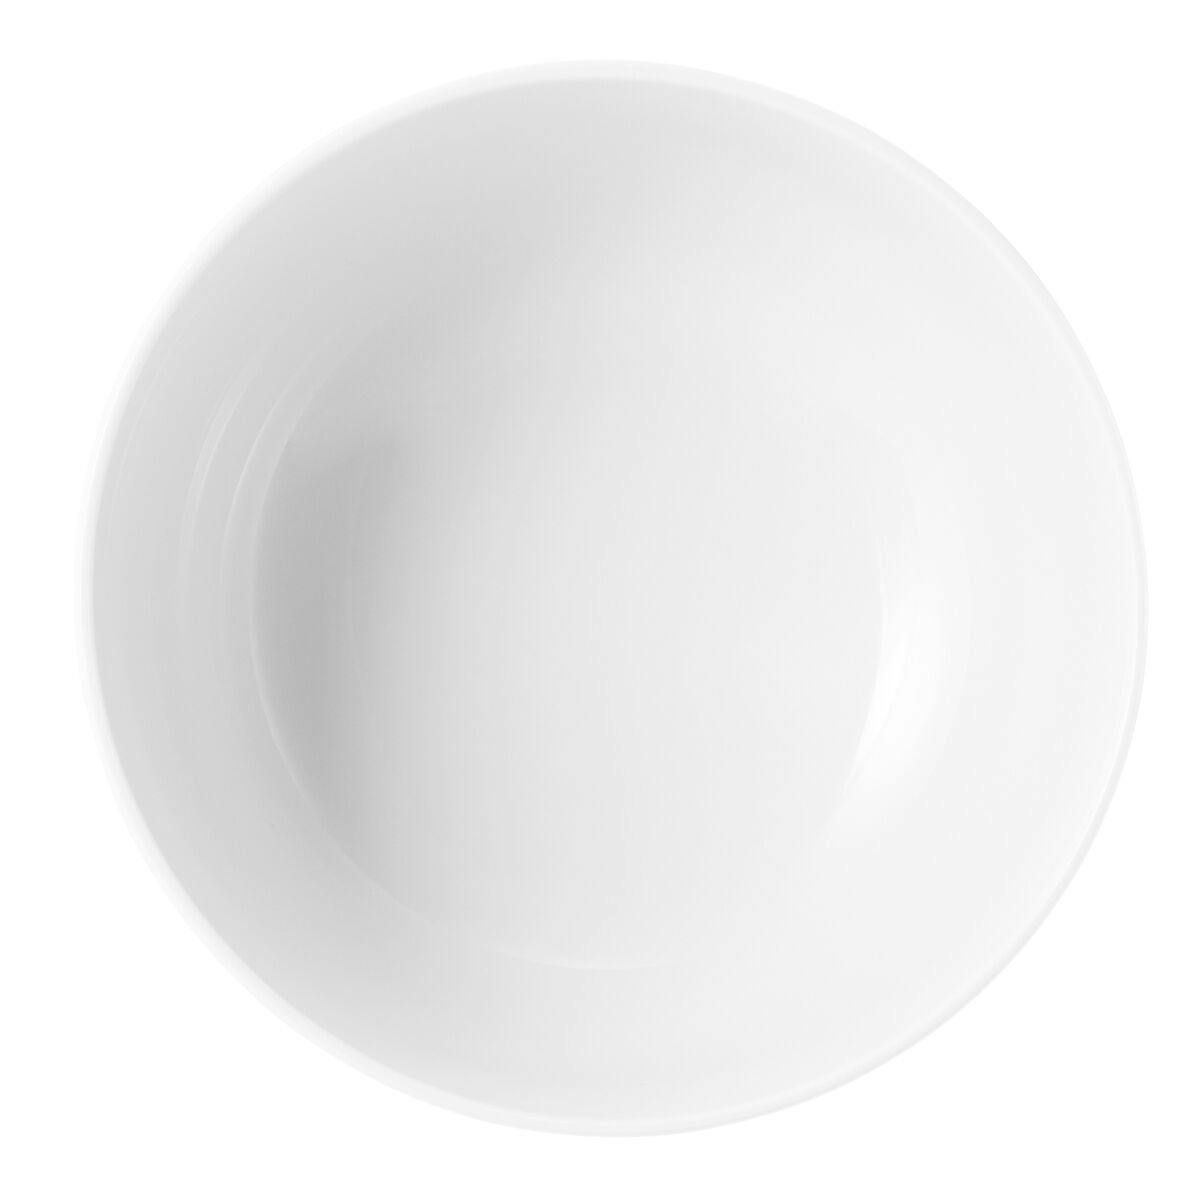 (2 pieces) Seltmann Weiden - Foodbowl - Ø 175 mm